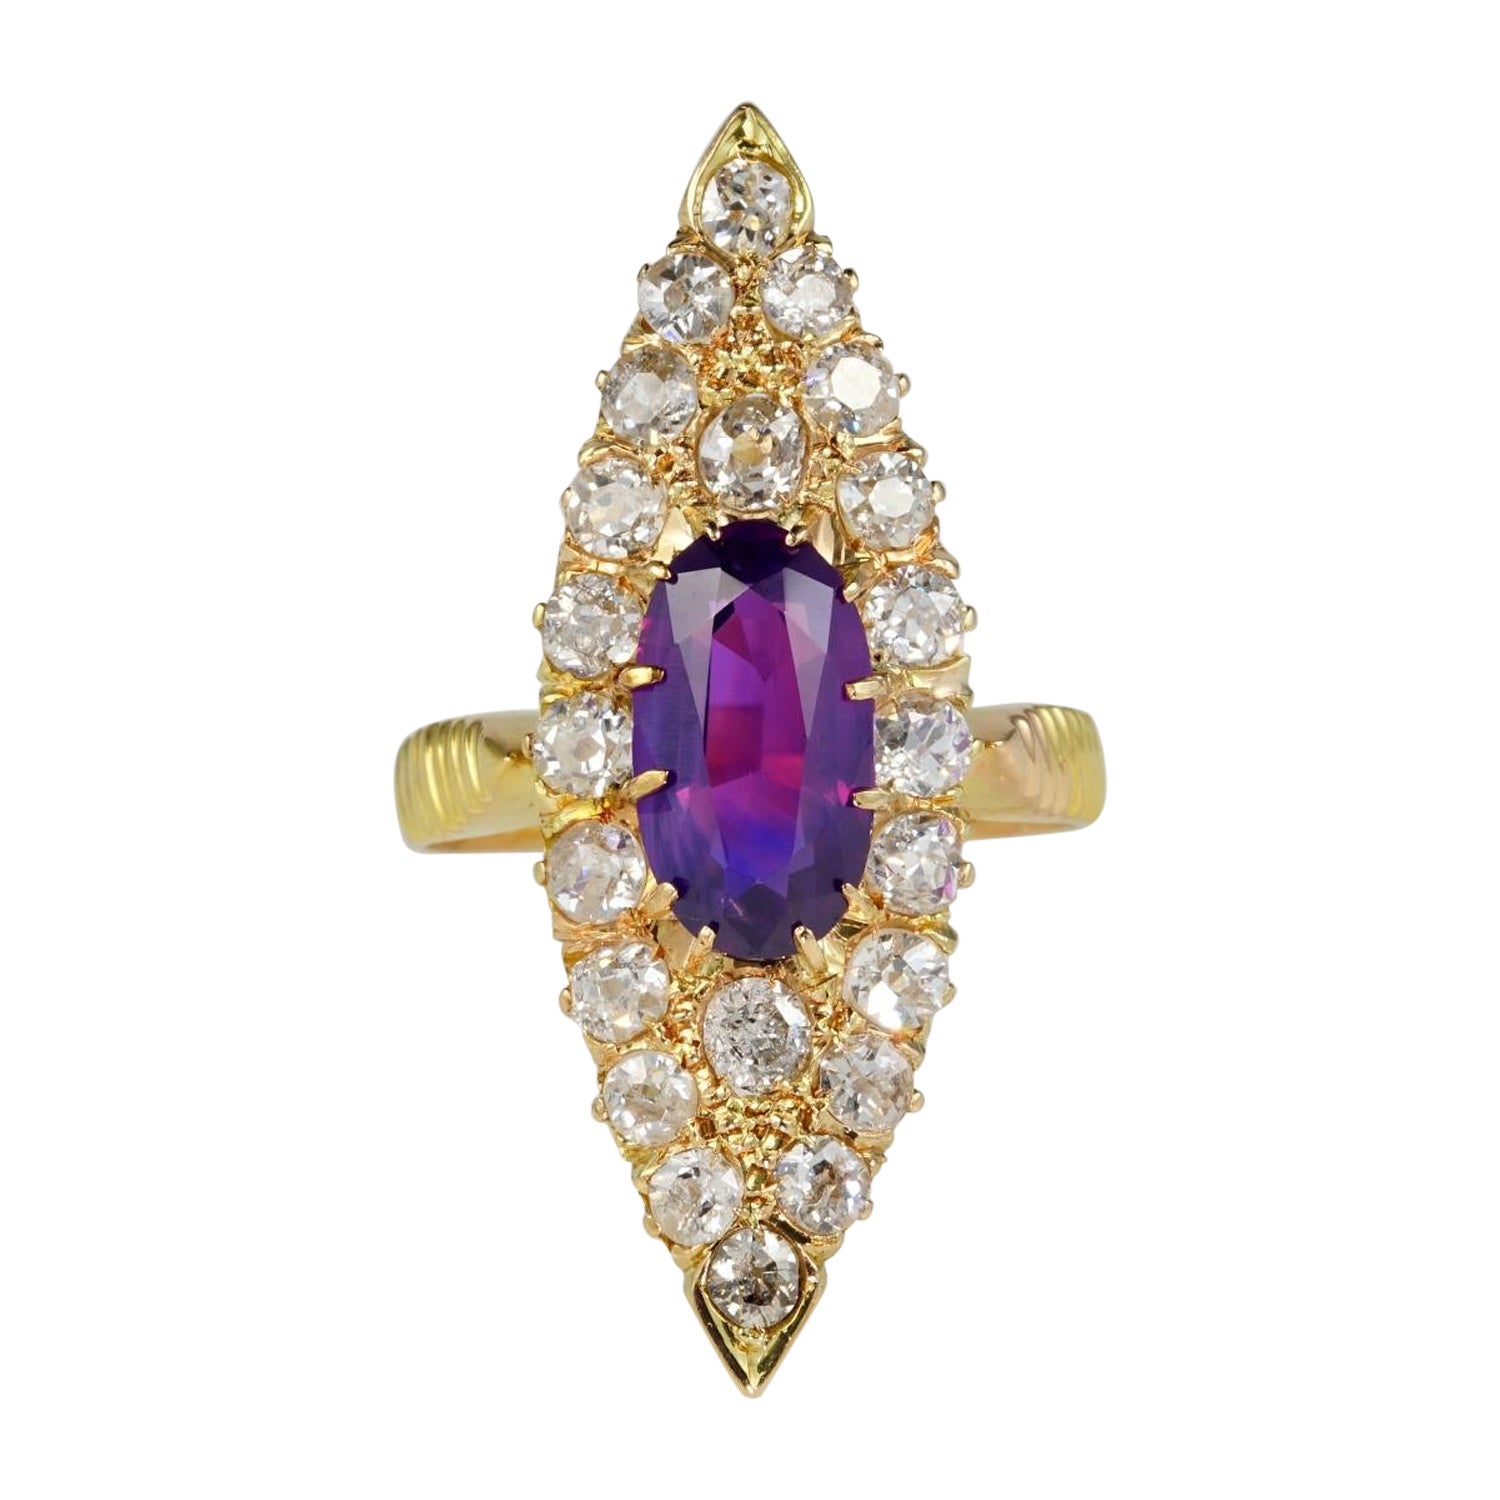 Bague navette victorienne en saphir de Ceylan violet certifié 1,80 carat et diamants 2,0 carats